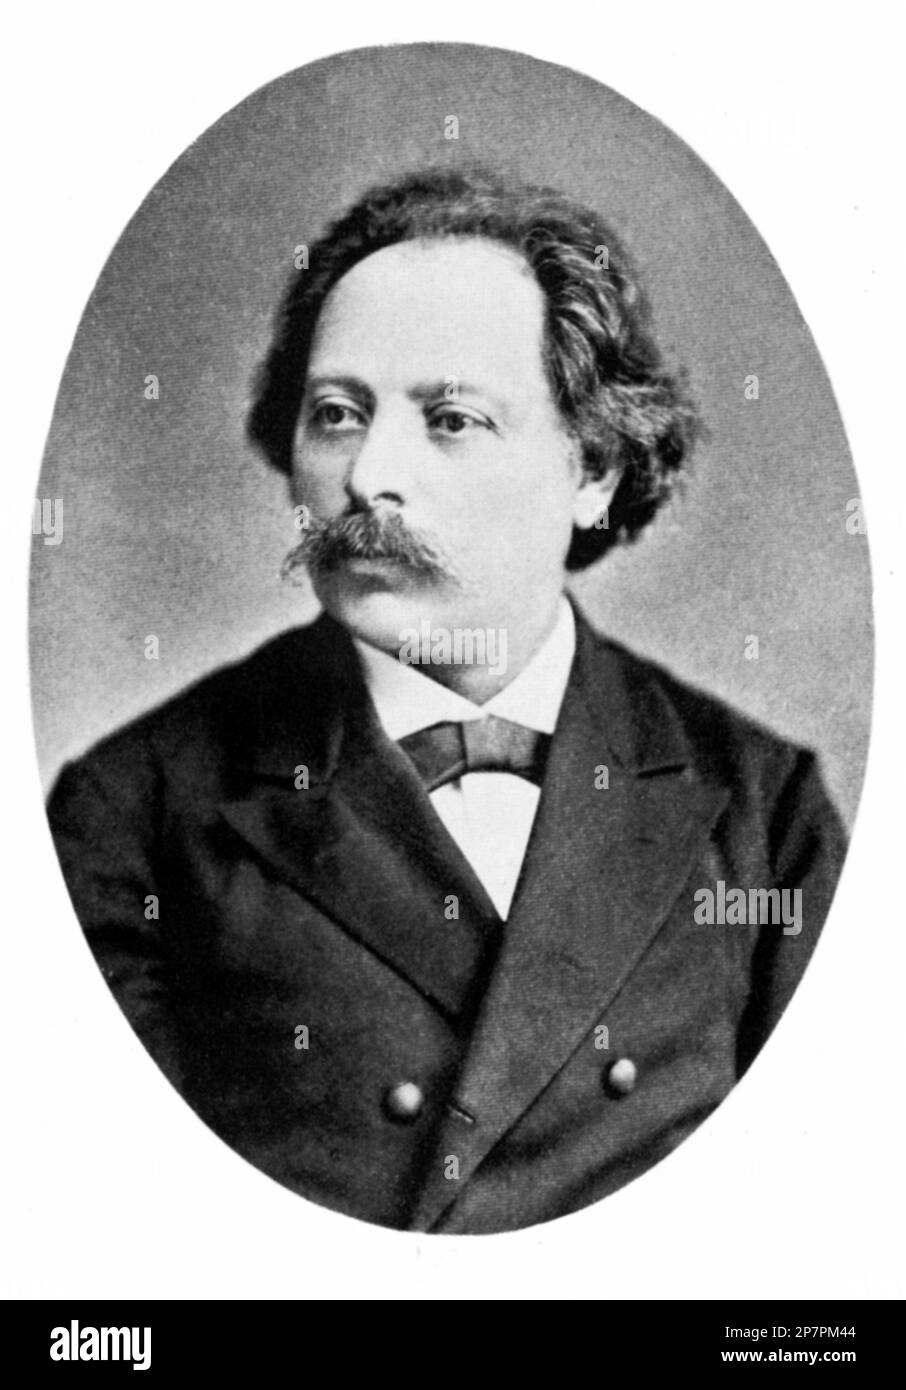 1875 c, AUSTRIA : il compositore di musica ungherese KARL GOLDMARK ( 1830 - 1915 ), attivo a Vienna . Ha scritto opere , musica orchestrale e da camera , ecc. La sua Opera LA REGINA DI SHEBA e la sua SINFONIA RUSTICA DI NOZZE sono ancora eseguiti . Foto di J. Lowy , Vienna . - COMPOSITORE - OPERA LIRICA - CLASSICA - CLASSICA - RITRATTO - RITRATTO - MUSICA - MUSICA - MUSICA - BAFFI - BAFFI - BAFFI - COLLETTO - COLLETTO - CRAVATTA - CRAVATTA - -- ARCHIVIO GBB Foto Stock